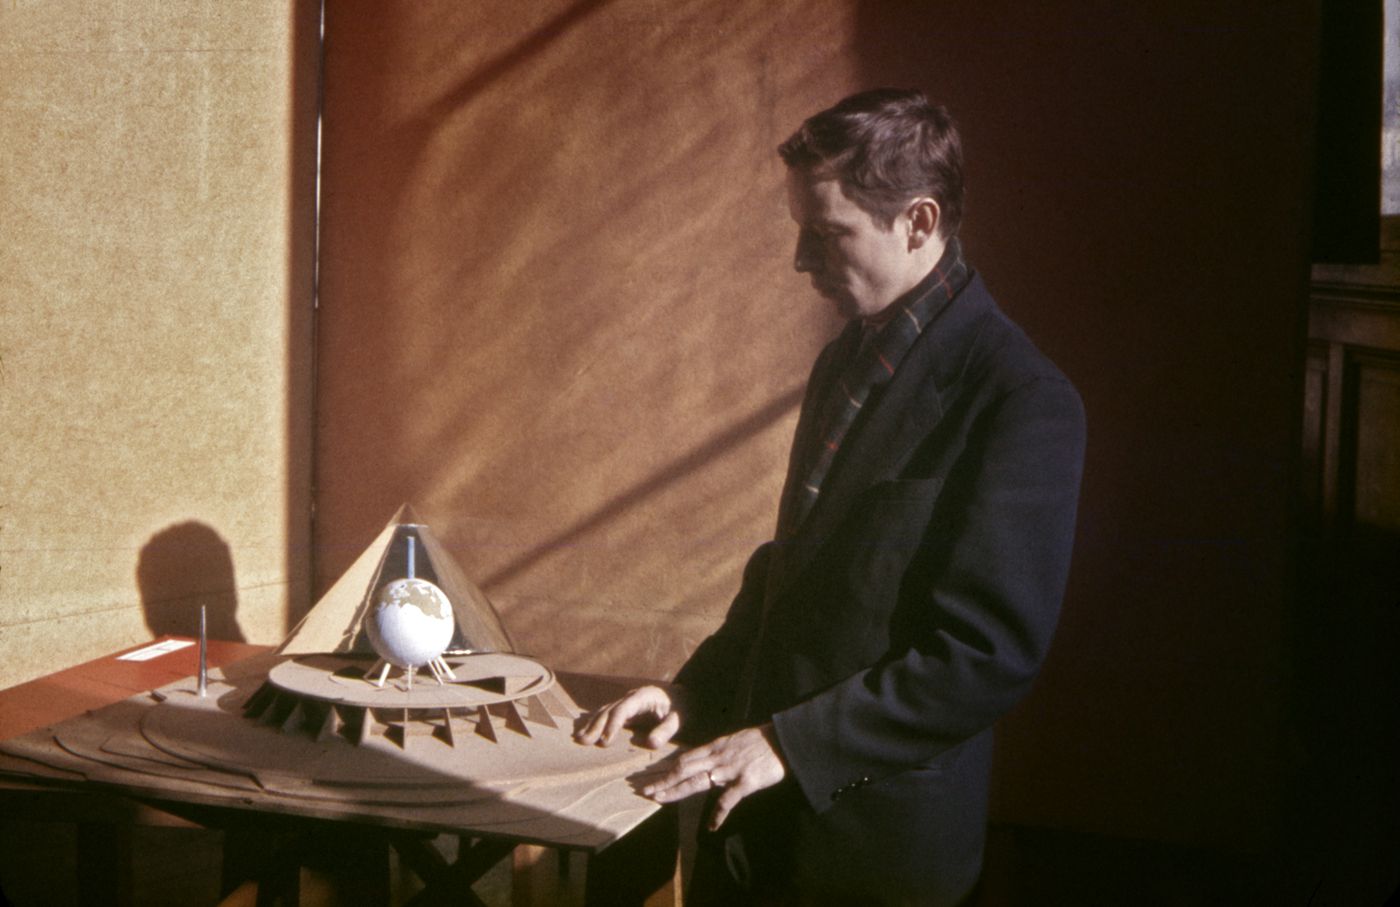 Luc Durand et la maquette de son projet de fin d'études "Planétarium"